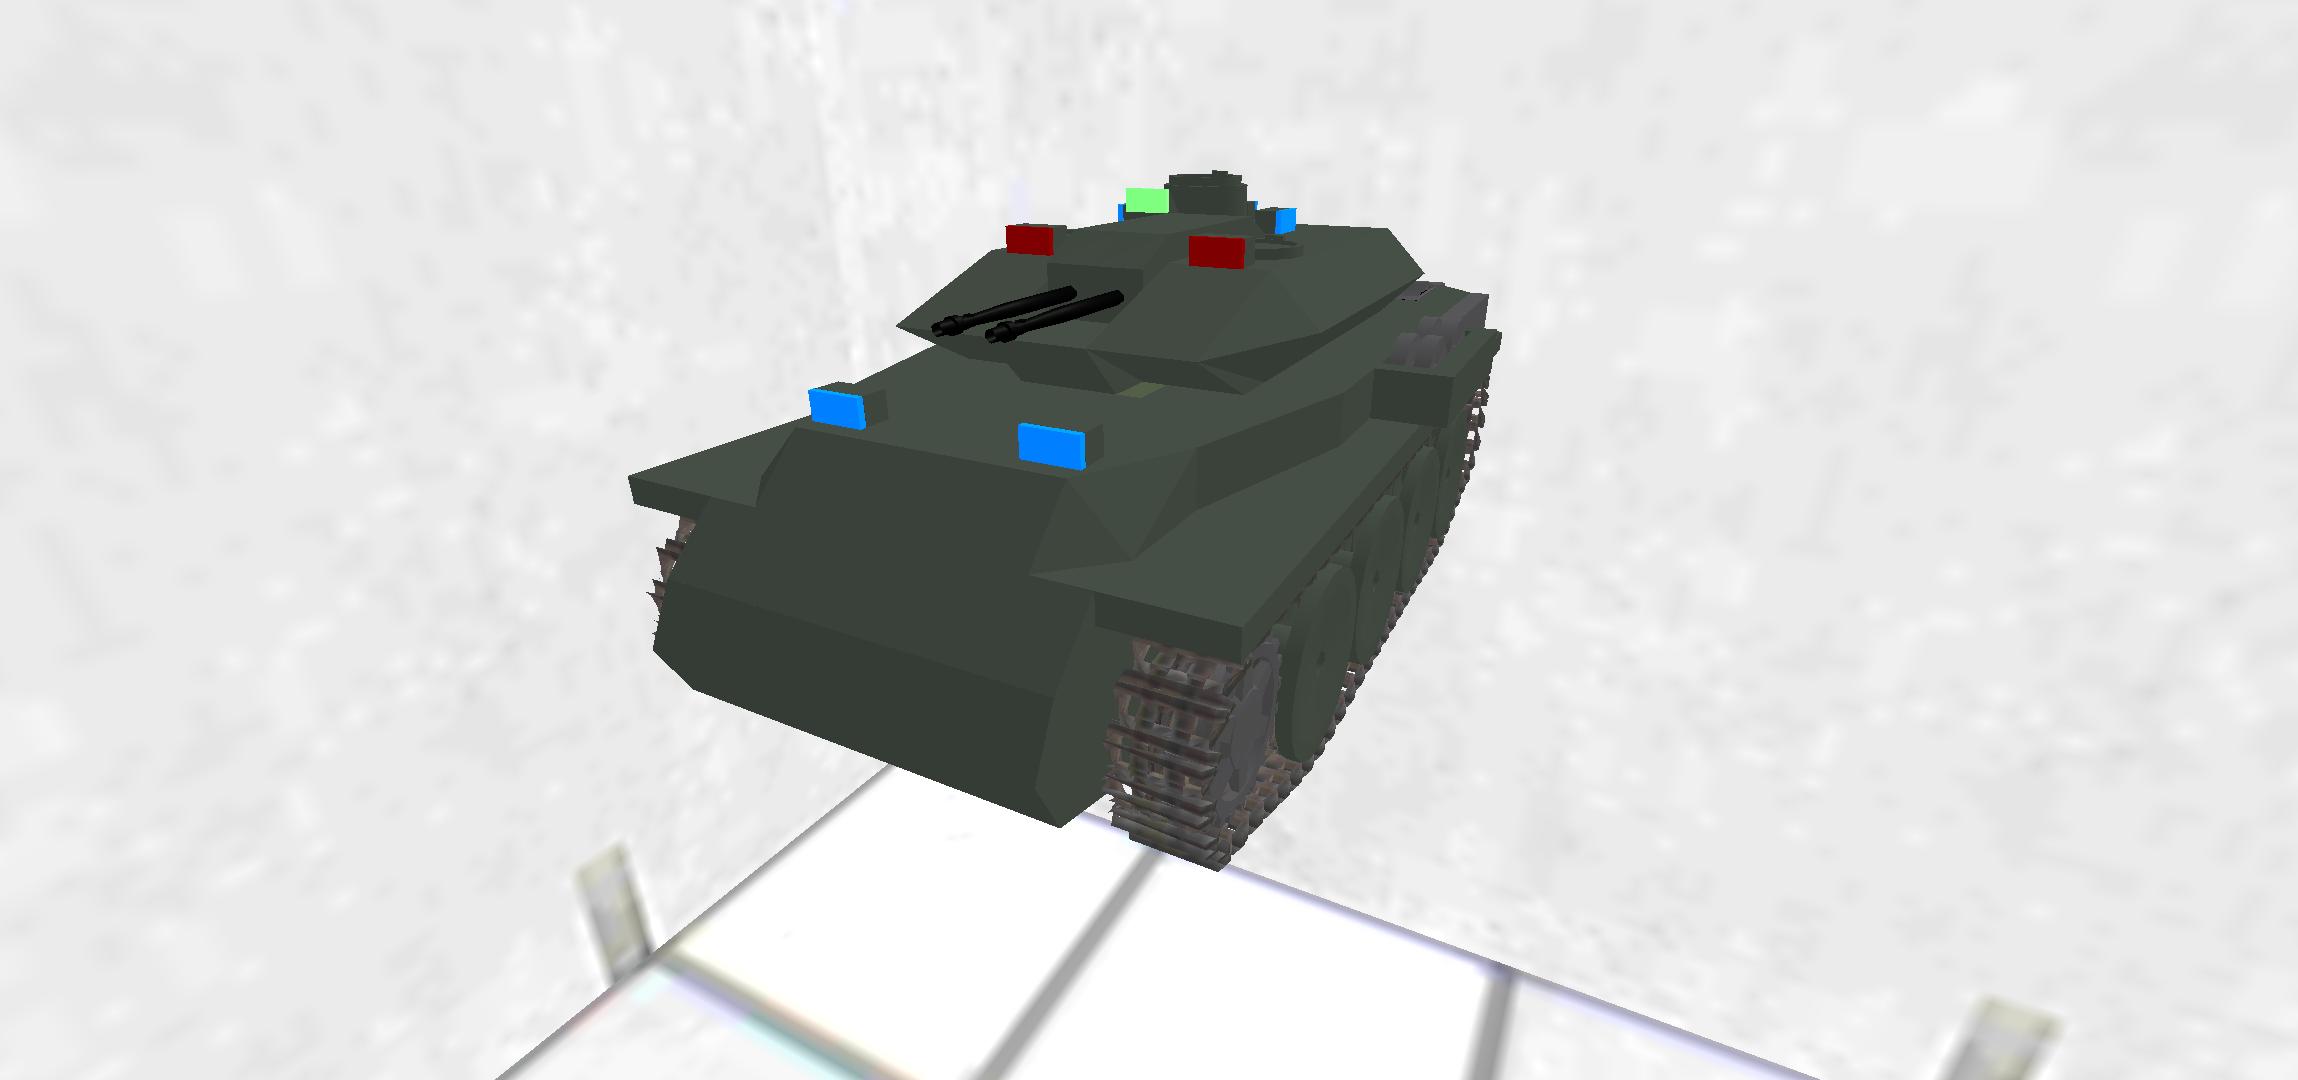 VK-32.03J "leopard III"